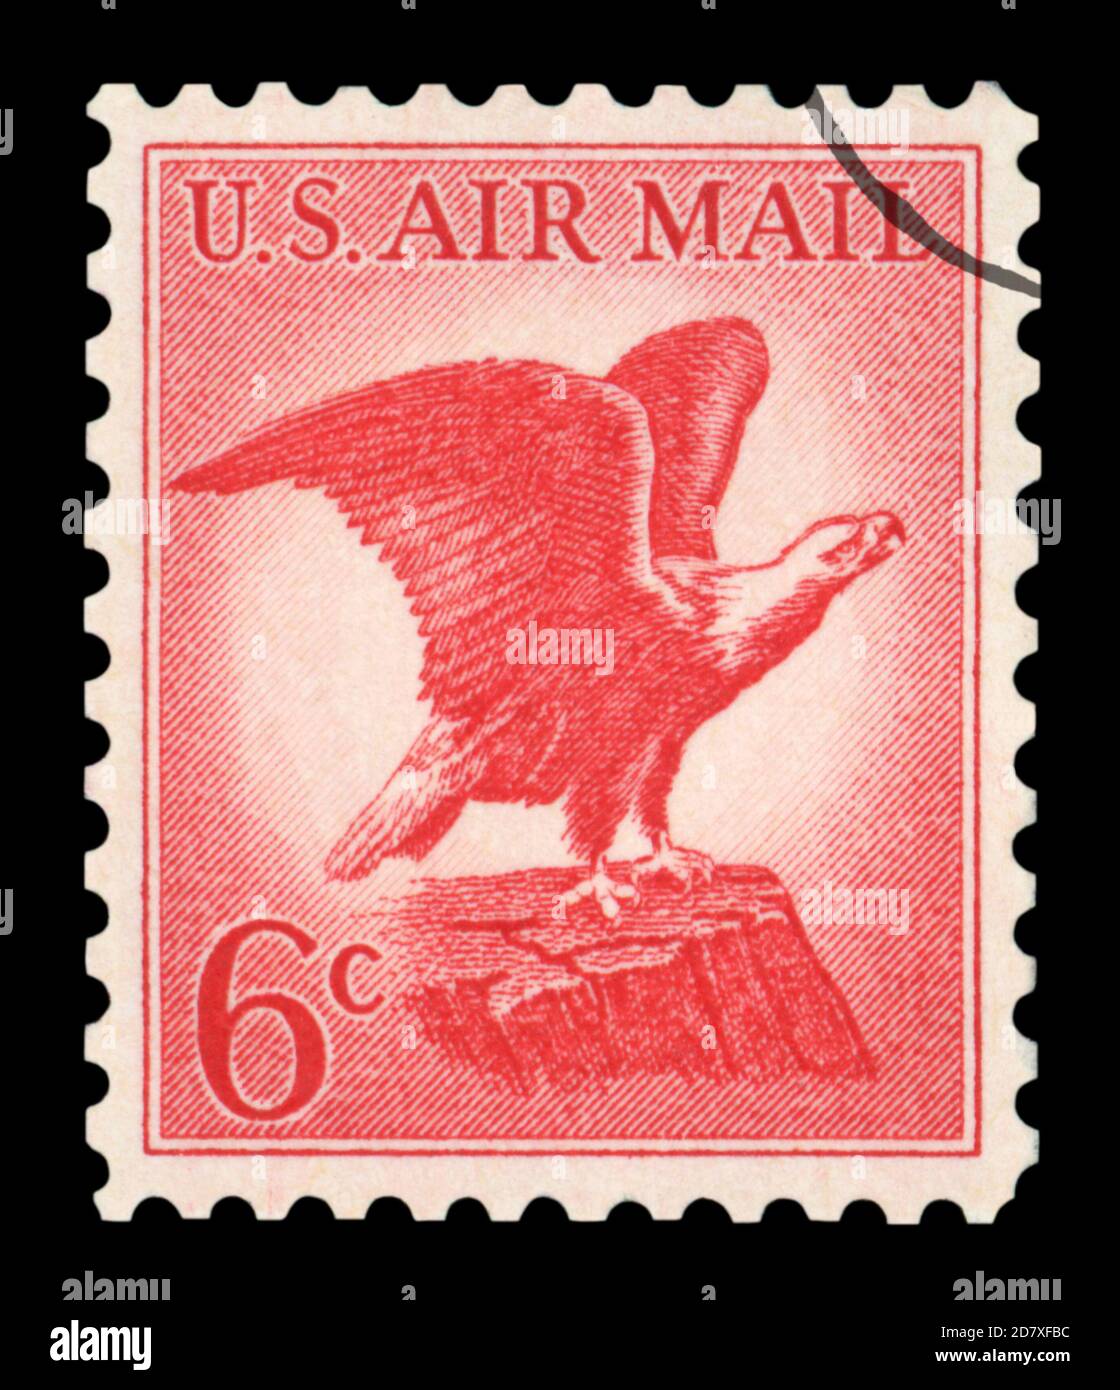 Estados Unidos de AMÉRICA - ALREDEDOR de 1963: Un sello postal usado de US Air Mail, con una ilustración del icónico Bald Eagle, alrededor de 1963. Foto de stock